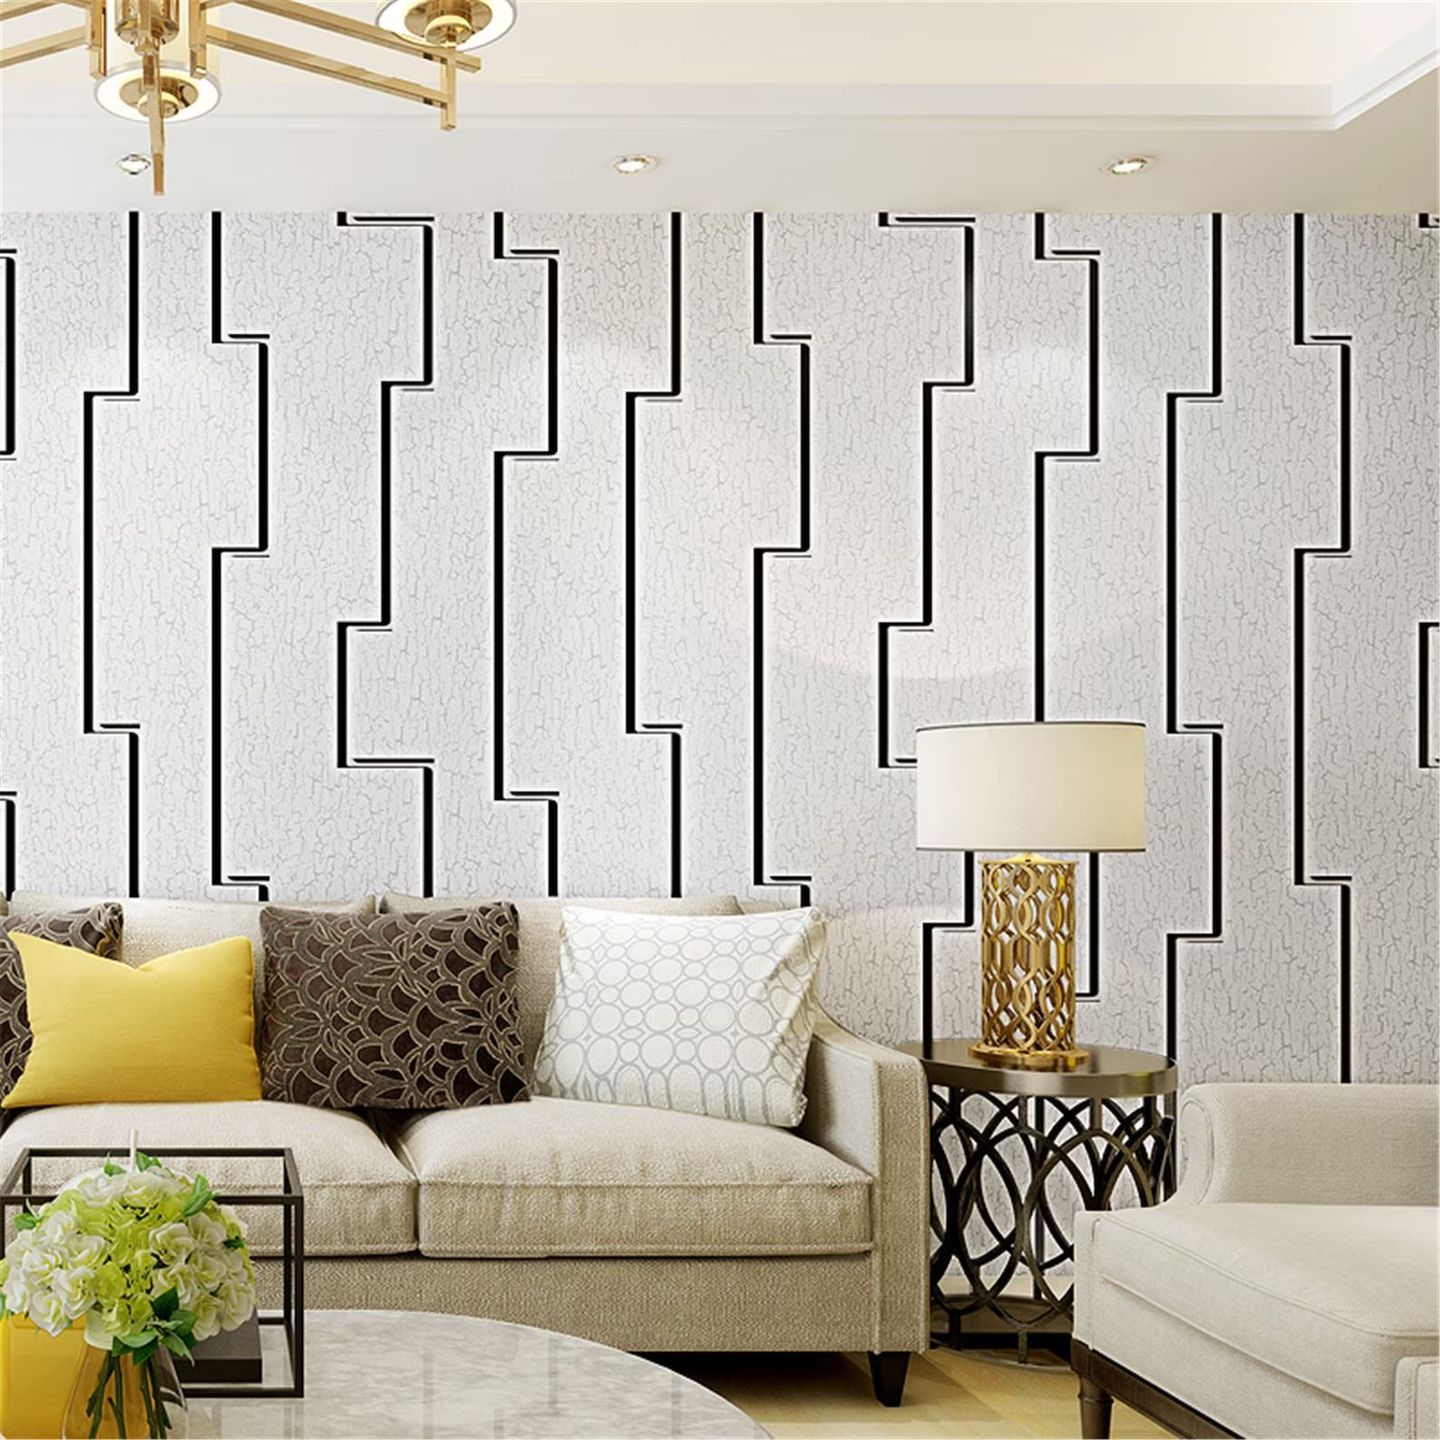 Gunakan wallpaper 3D untuk menghadirkan focal point di ruang tamu.